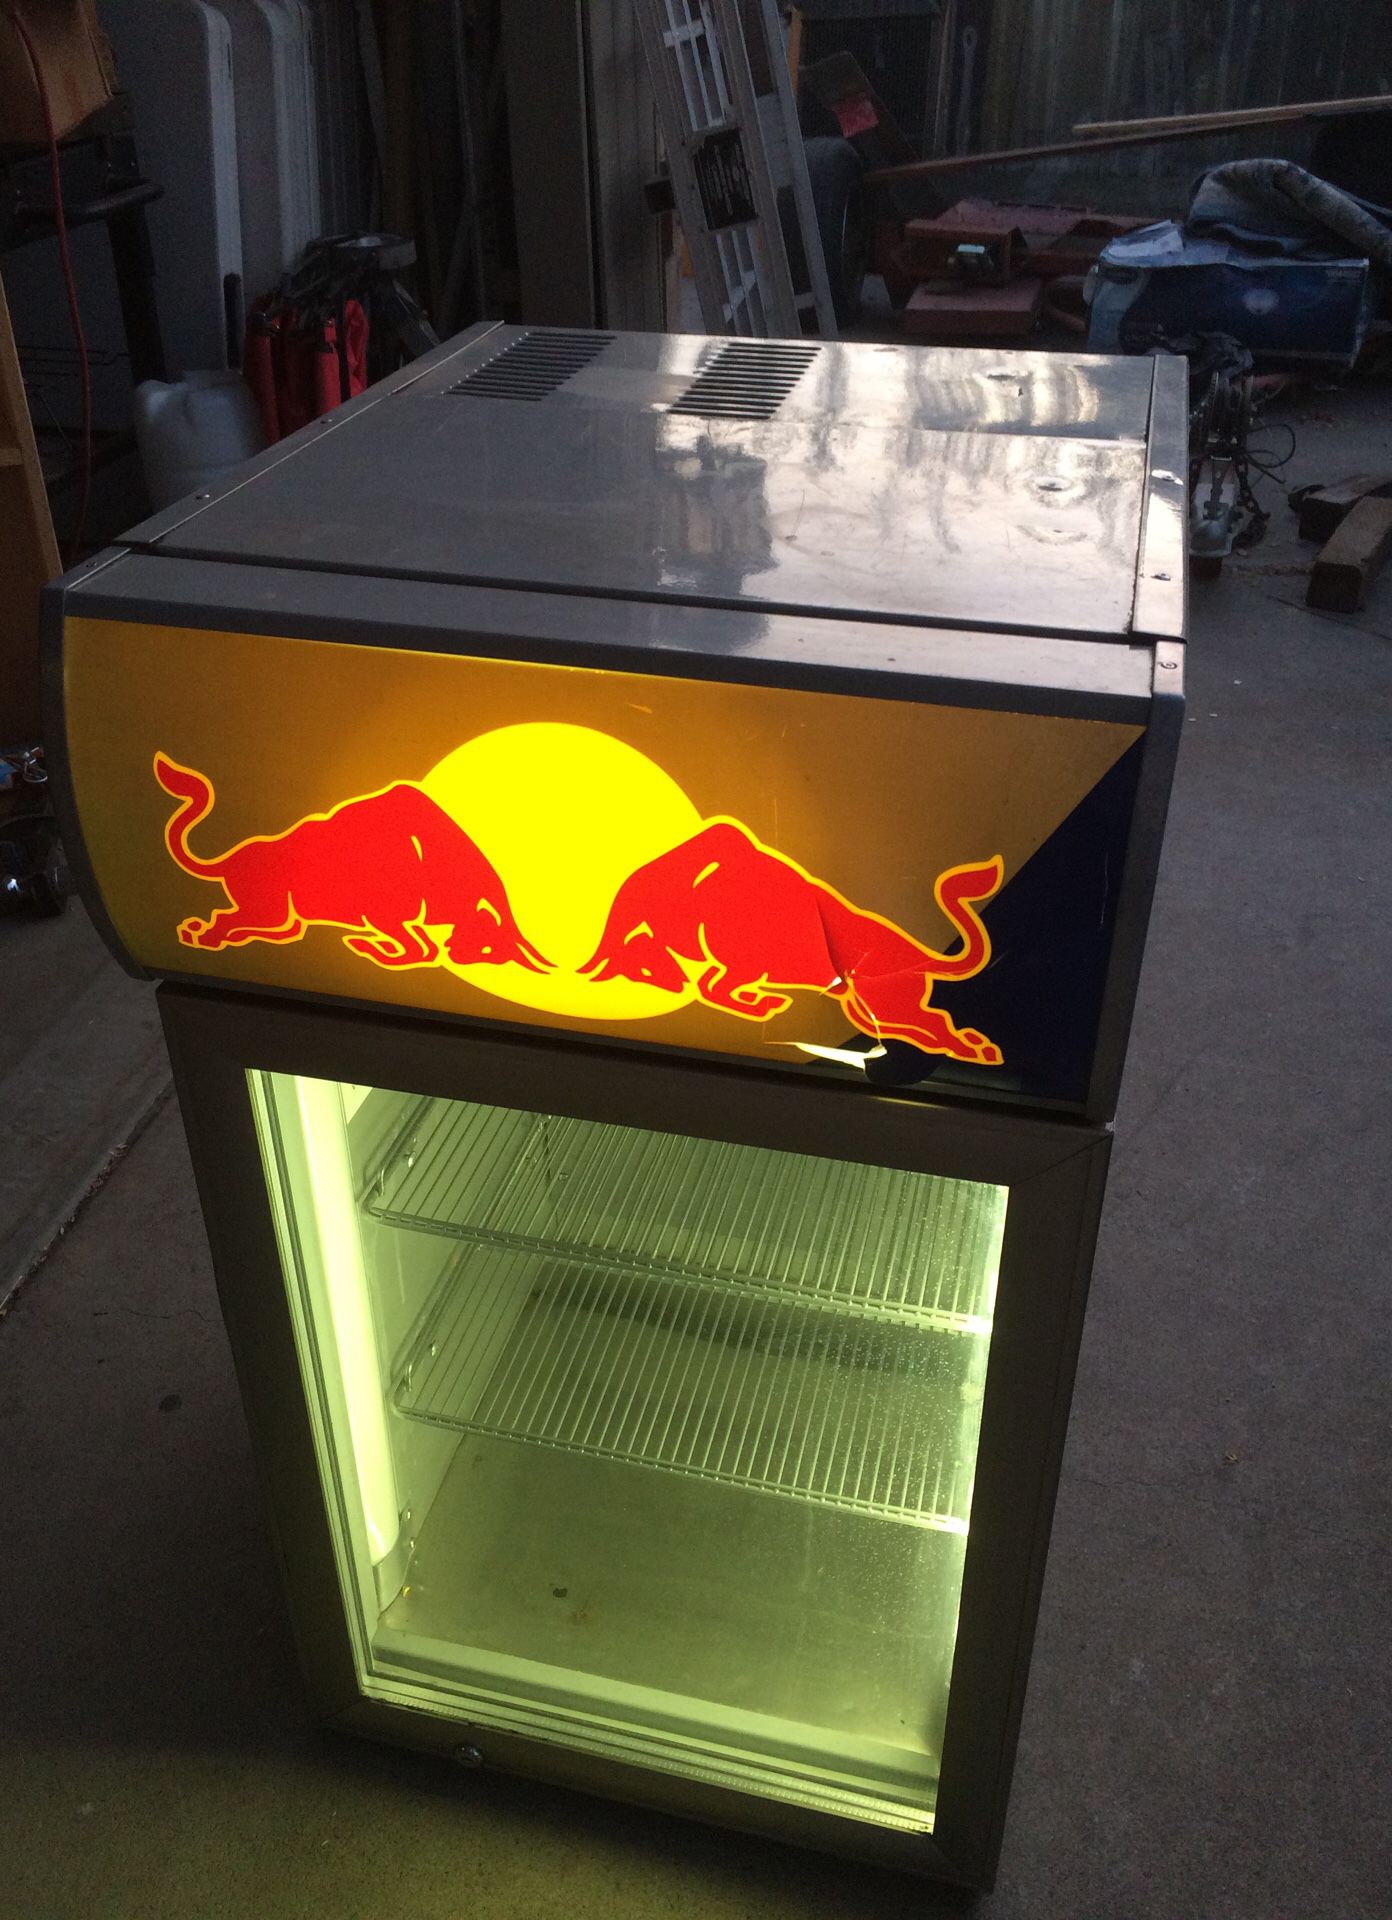 Red Bull fridge doesn’t cool